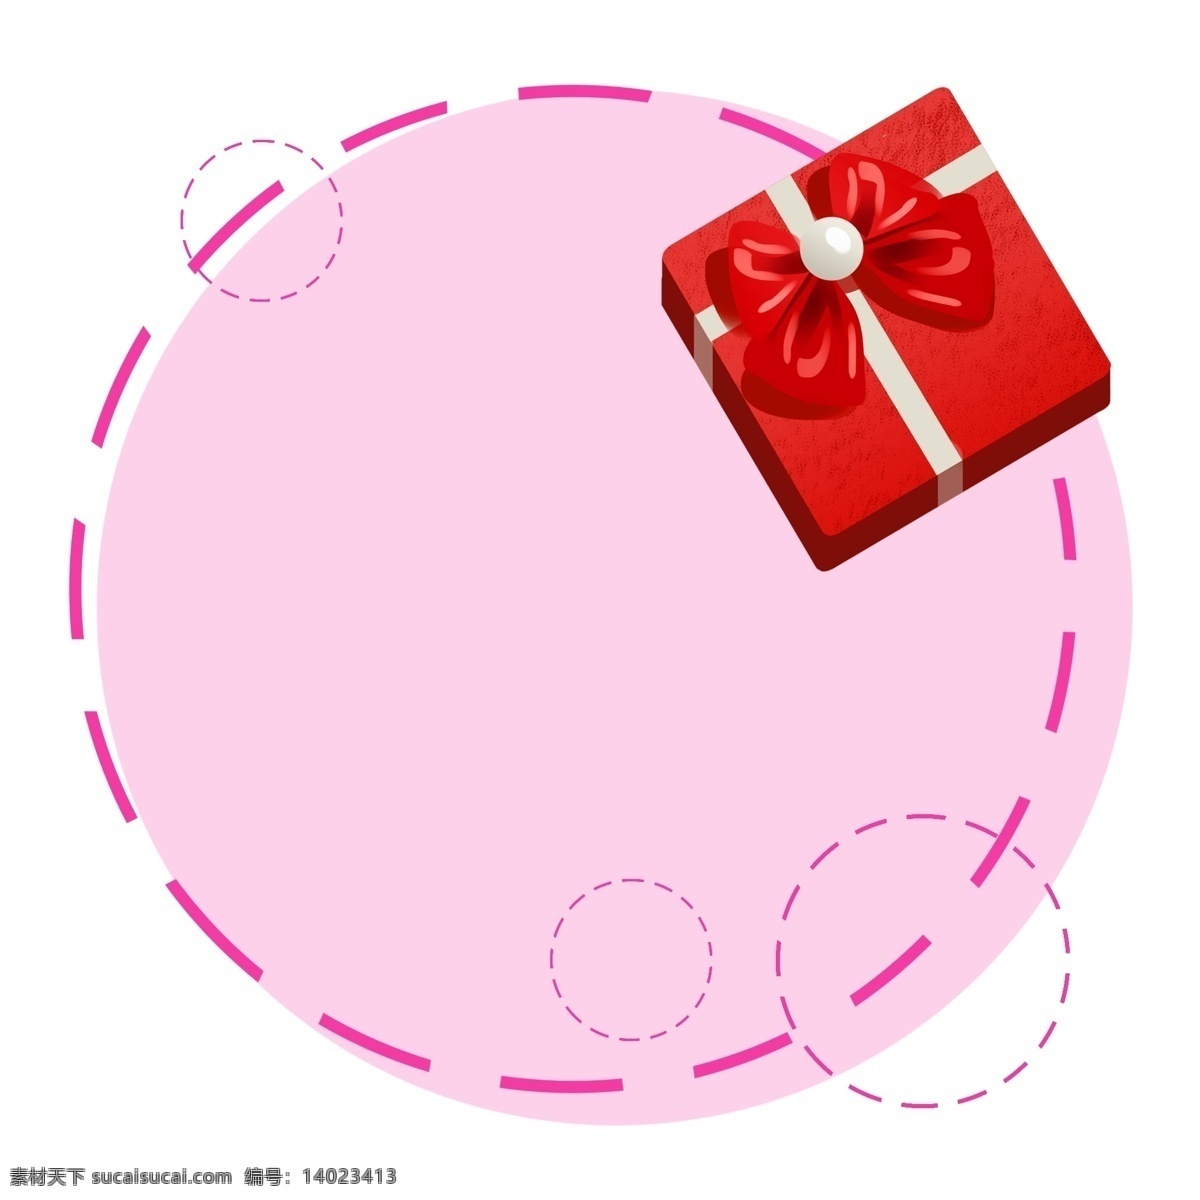 情人节 礼物 边框 插画 情人节快乐 礼物边框 红色礼物盒 红色蝴蝶结 粉色底纹边框 粉色虚线框